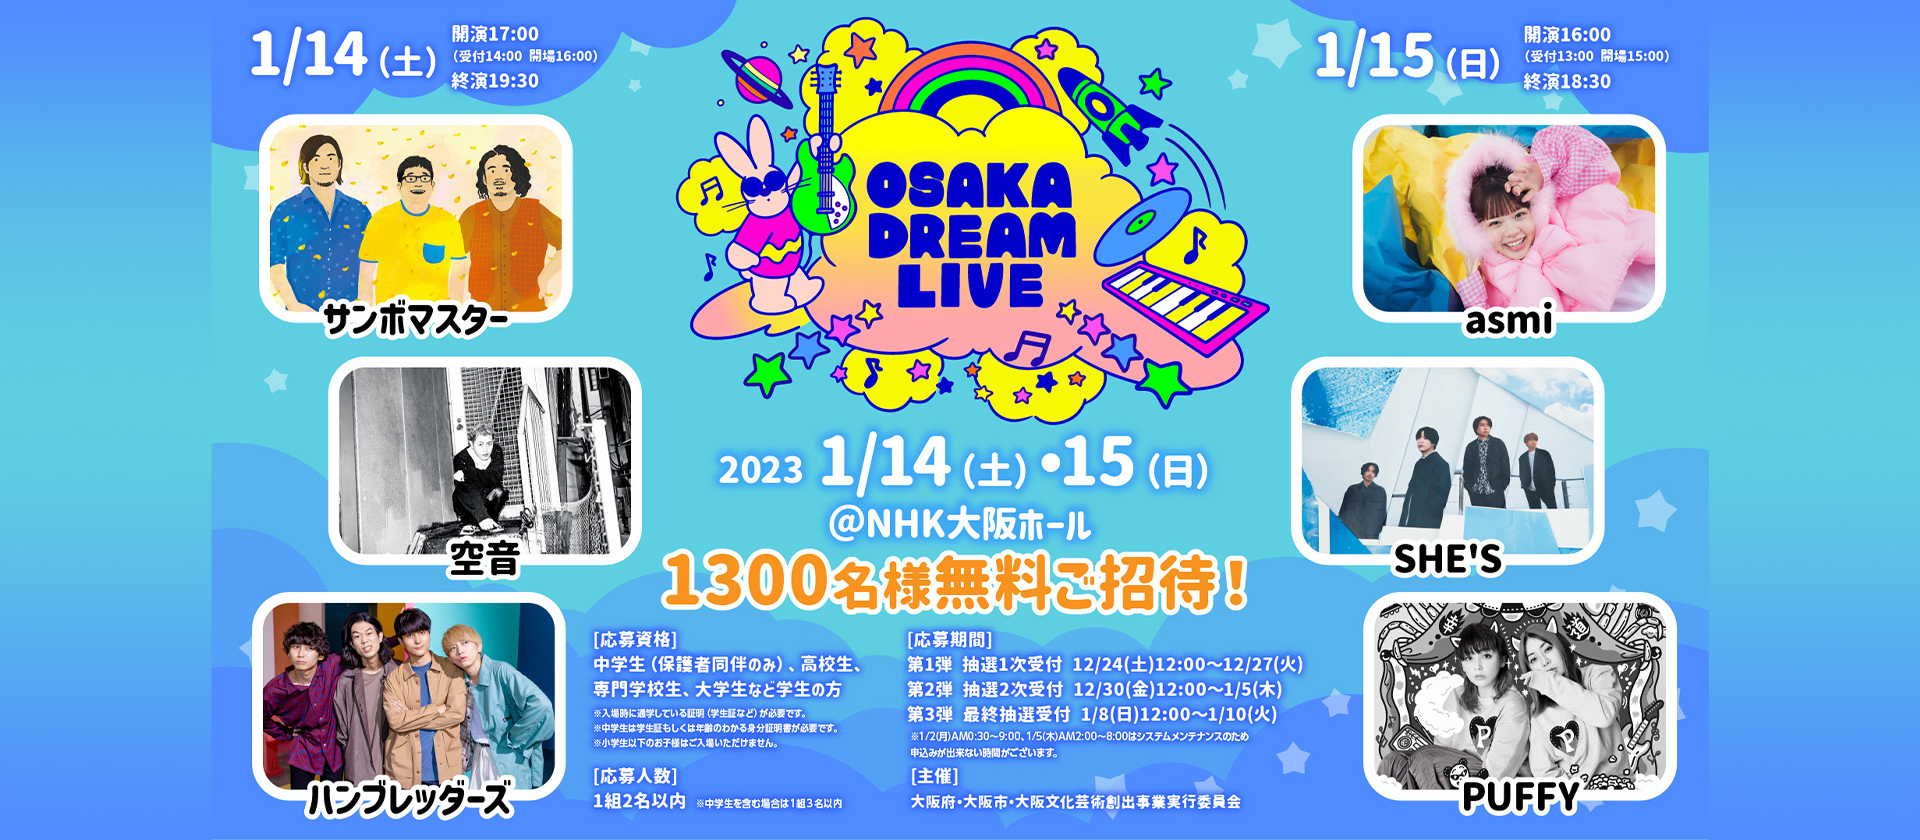 大阪文化芸術創出事業 『OSAKA DREAM LIVE 2023』 - 大阪文化芸術創出 